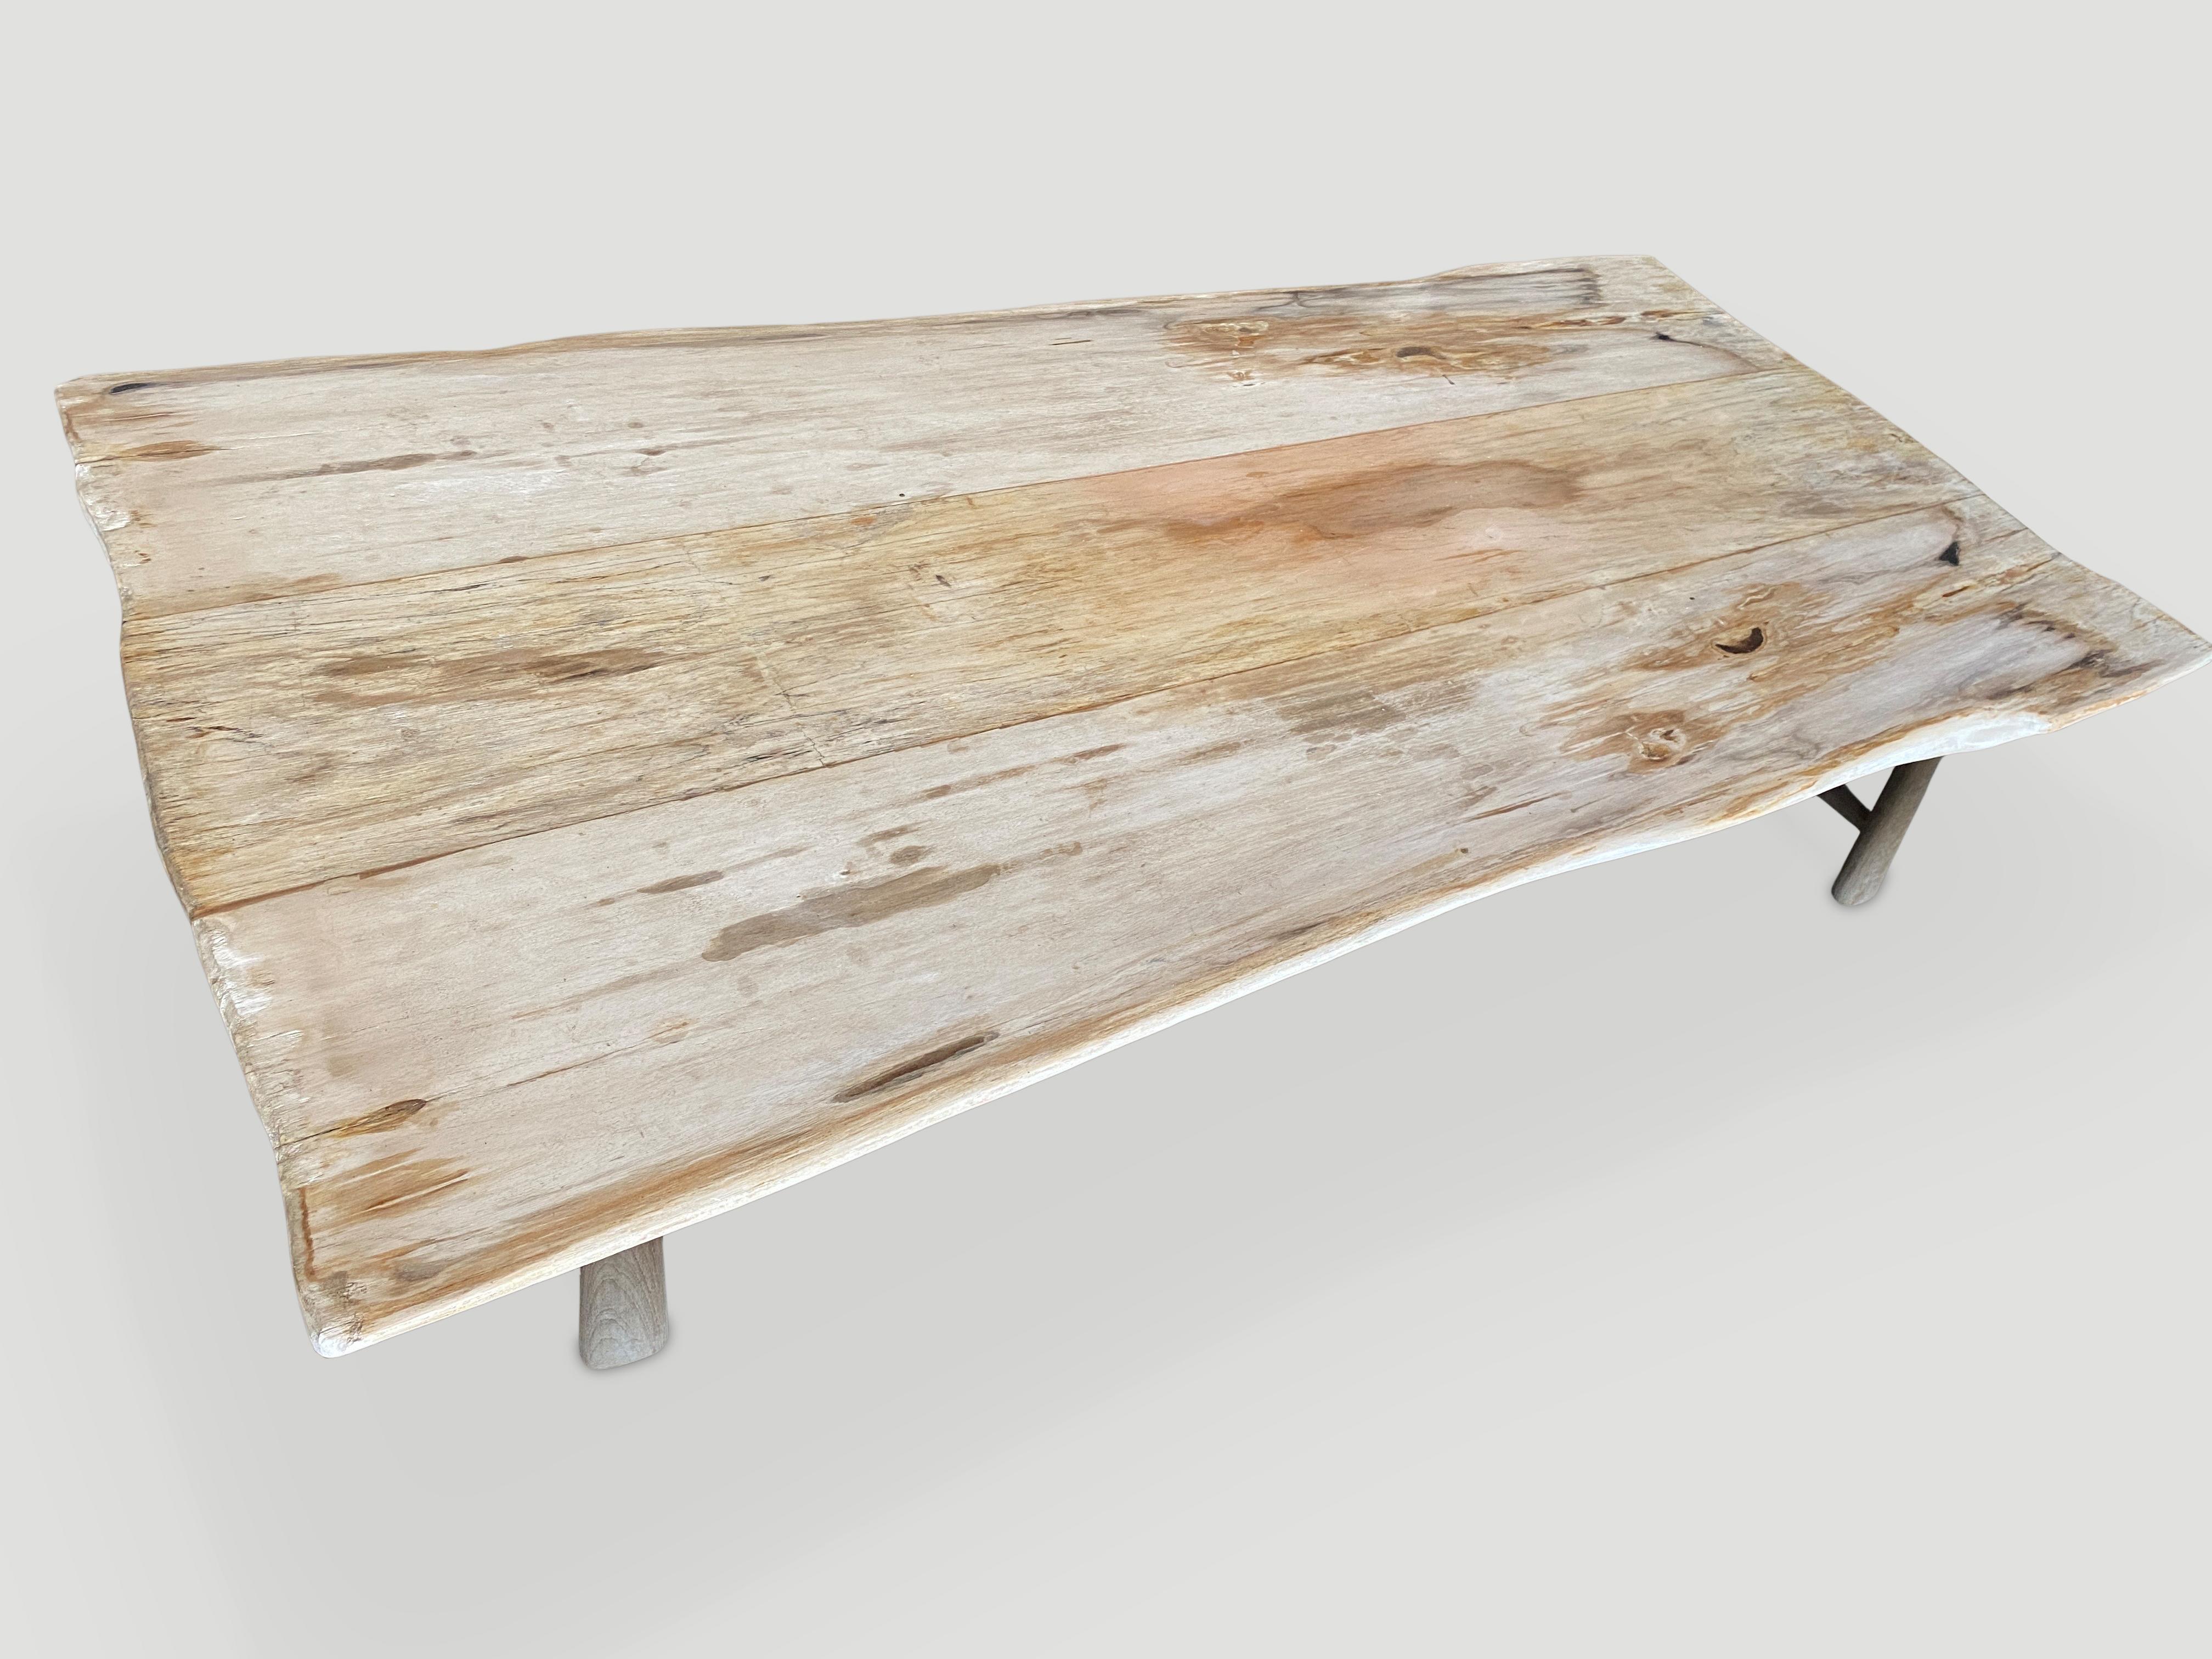 Impressionnante table de salle à manger ou table basse en bois pétrifié de haute qualité de deux pouces d'épaisseur. Trois dalles provenant d'un même tronc de bois pétrifié sont réunies. La largeur du bord vif varie de 38